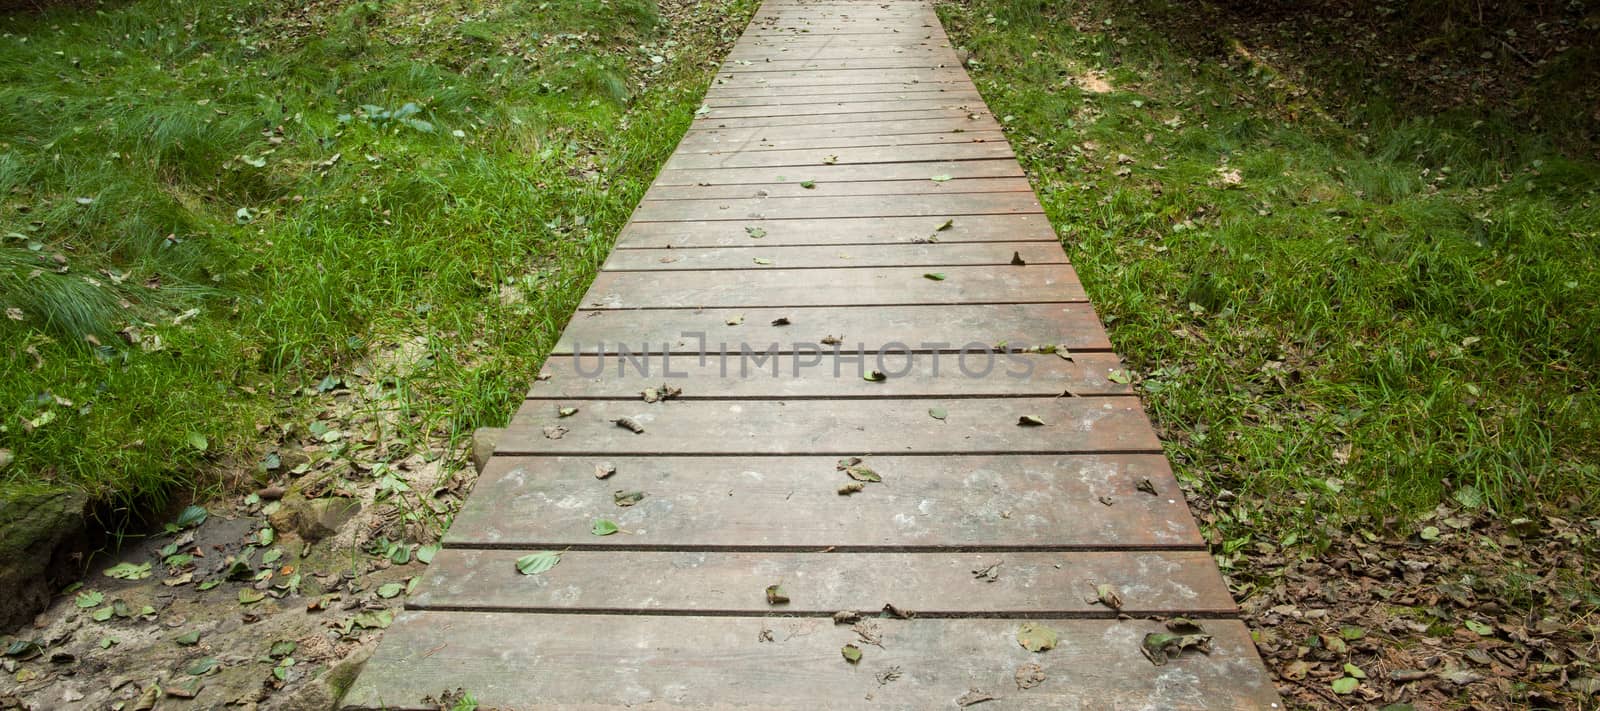 Narrow wooden walkway along grassland